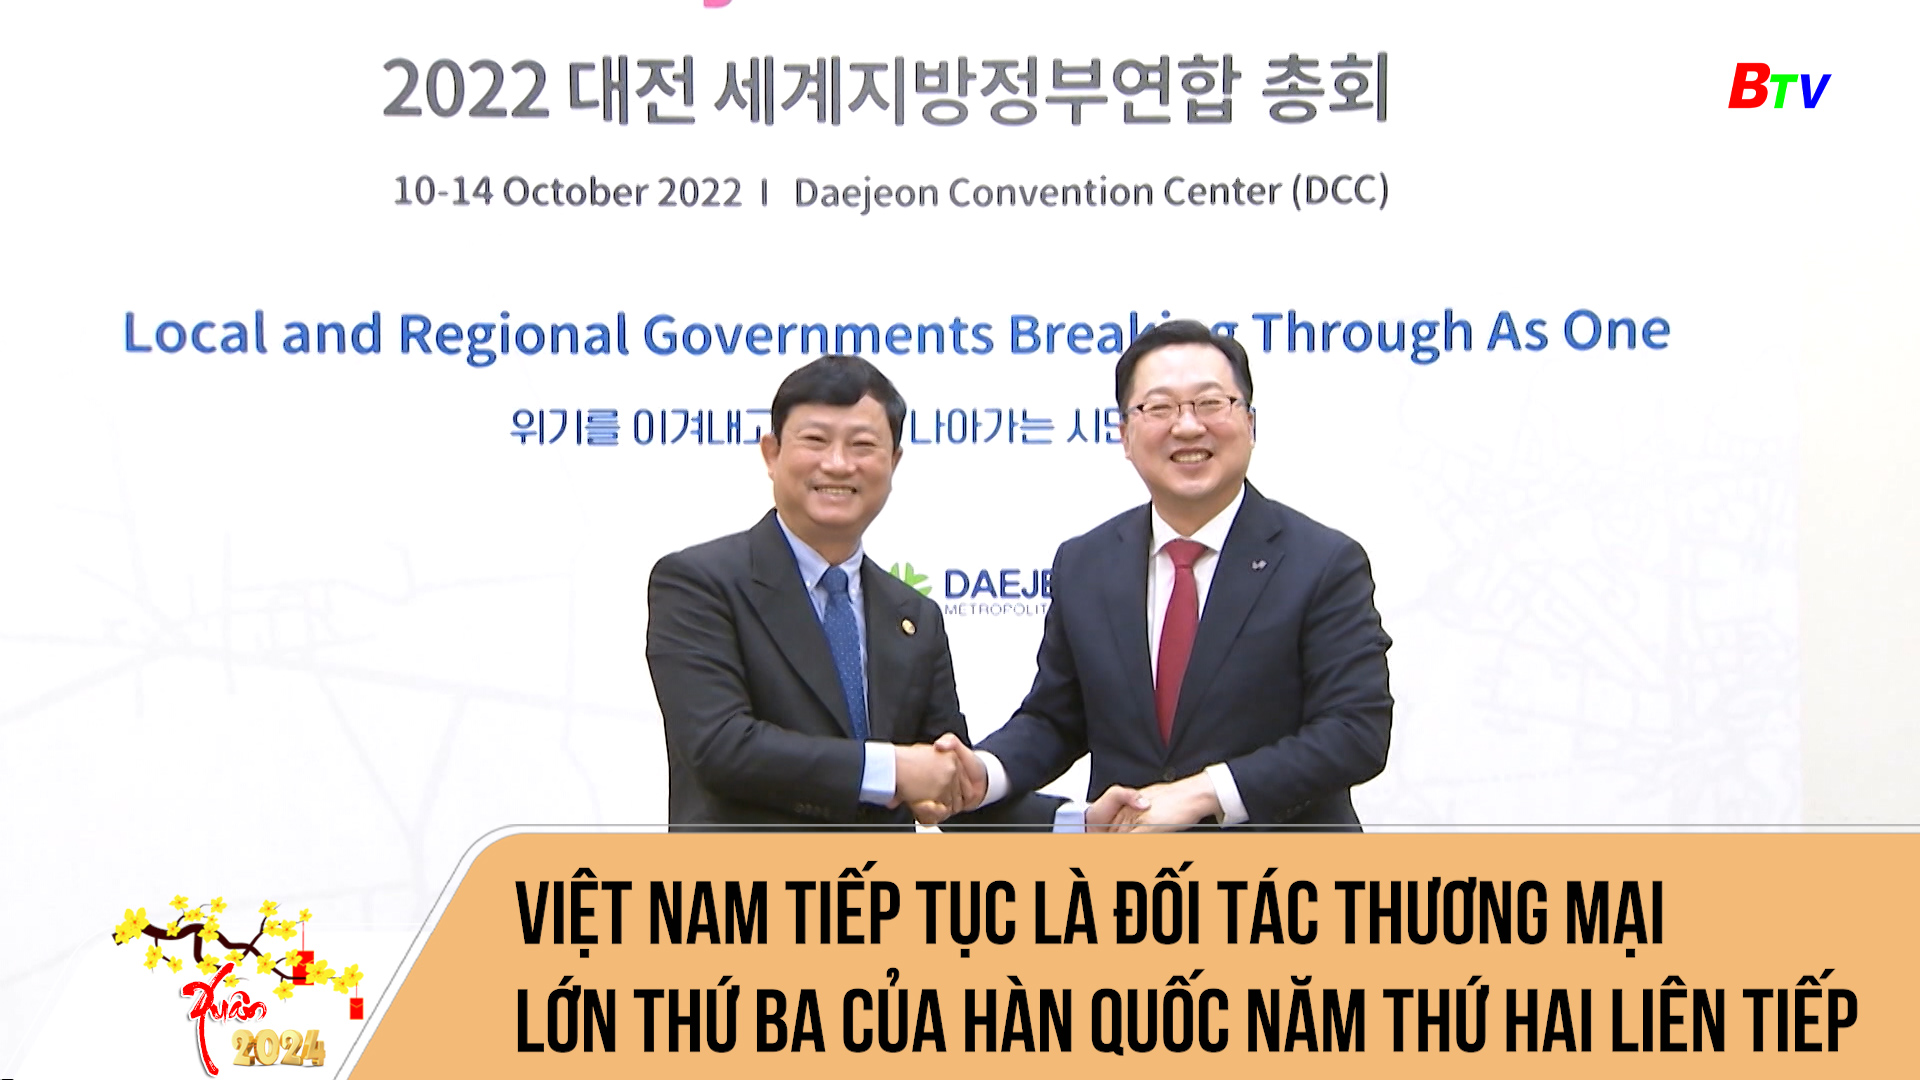 Việt Nam tiếp tục là đối tác thương mại lớn thứ ba của Hàn Quốc năm thứ hai liên tiếp